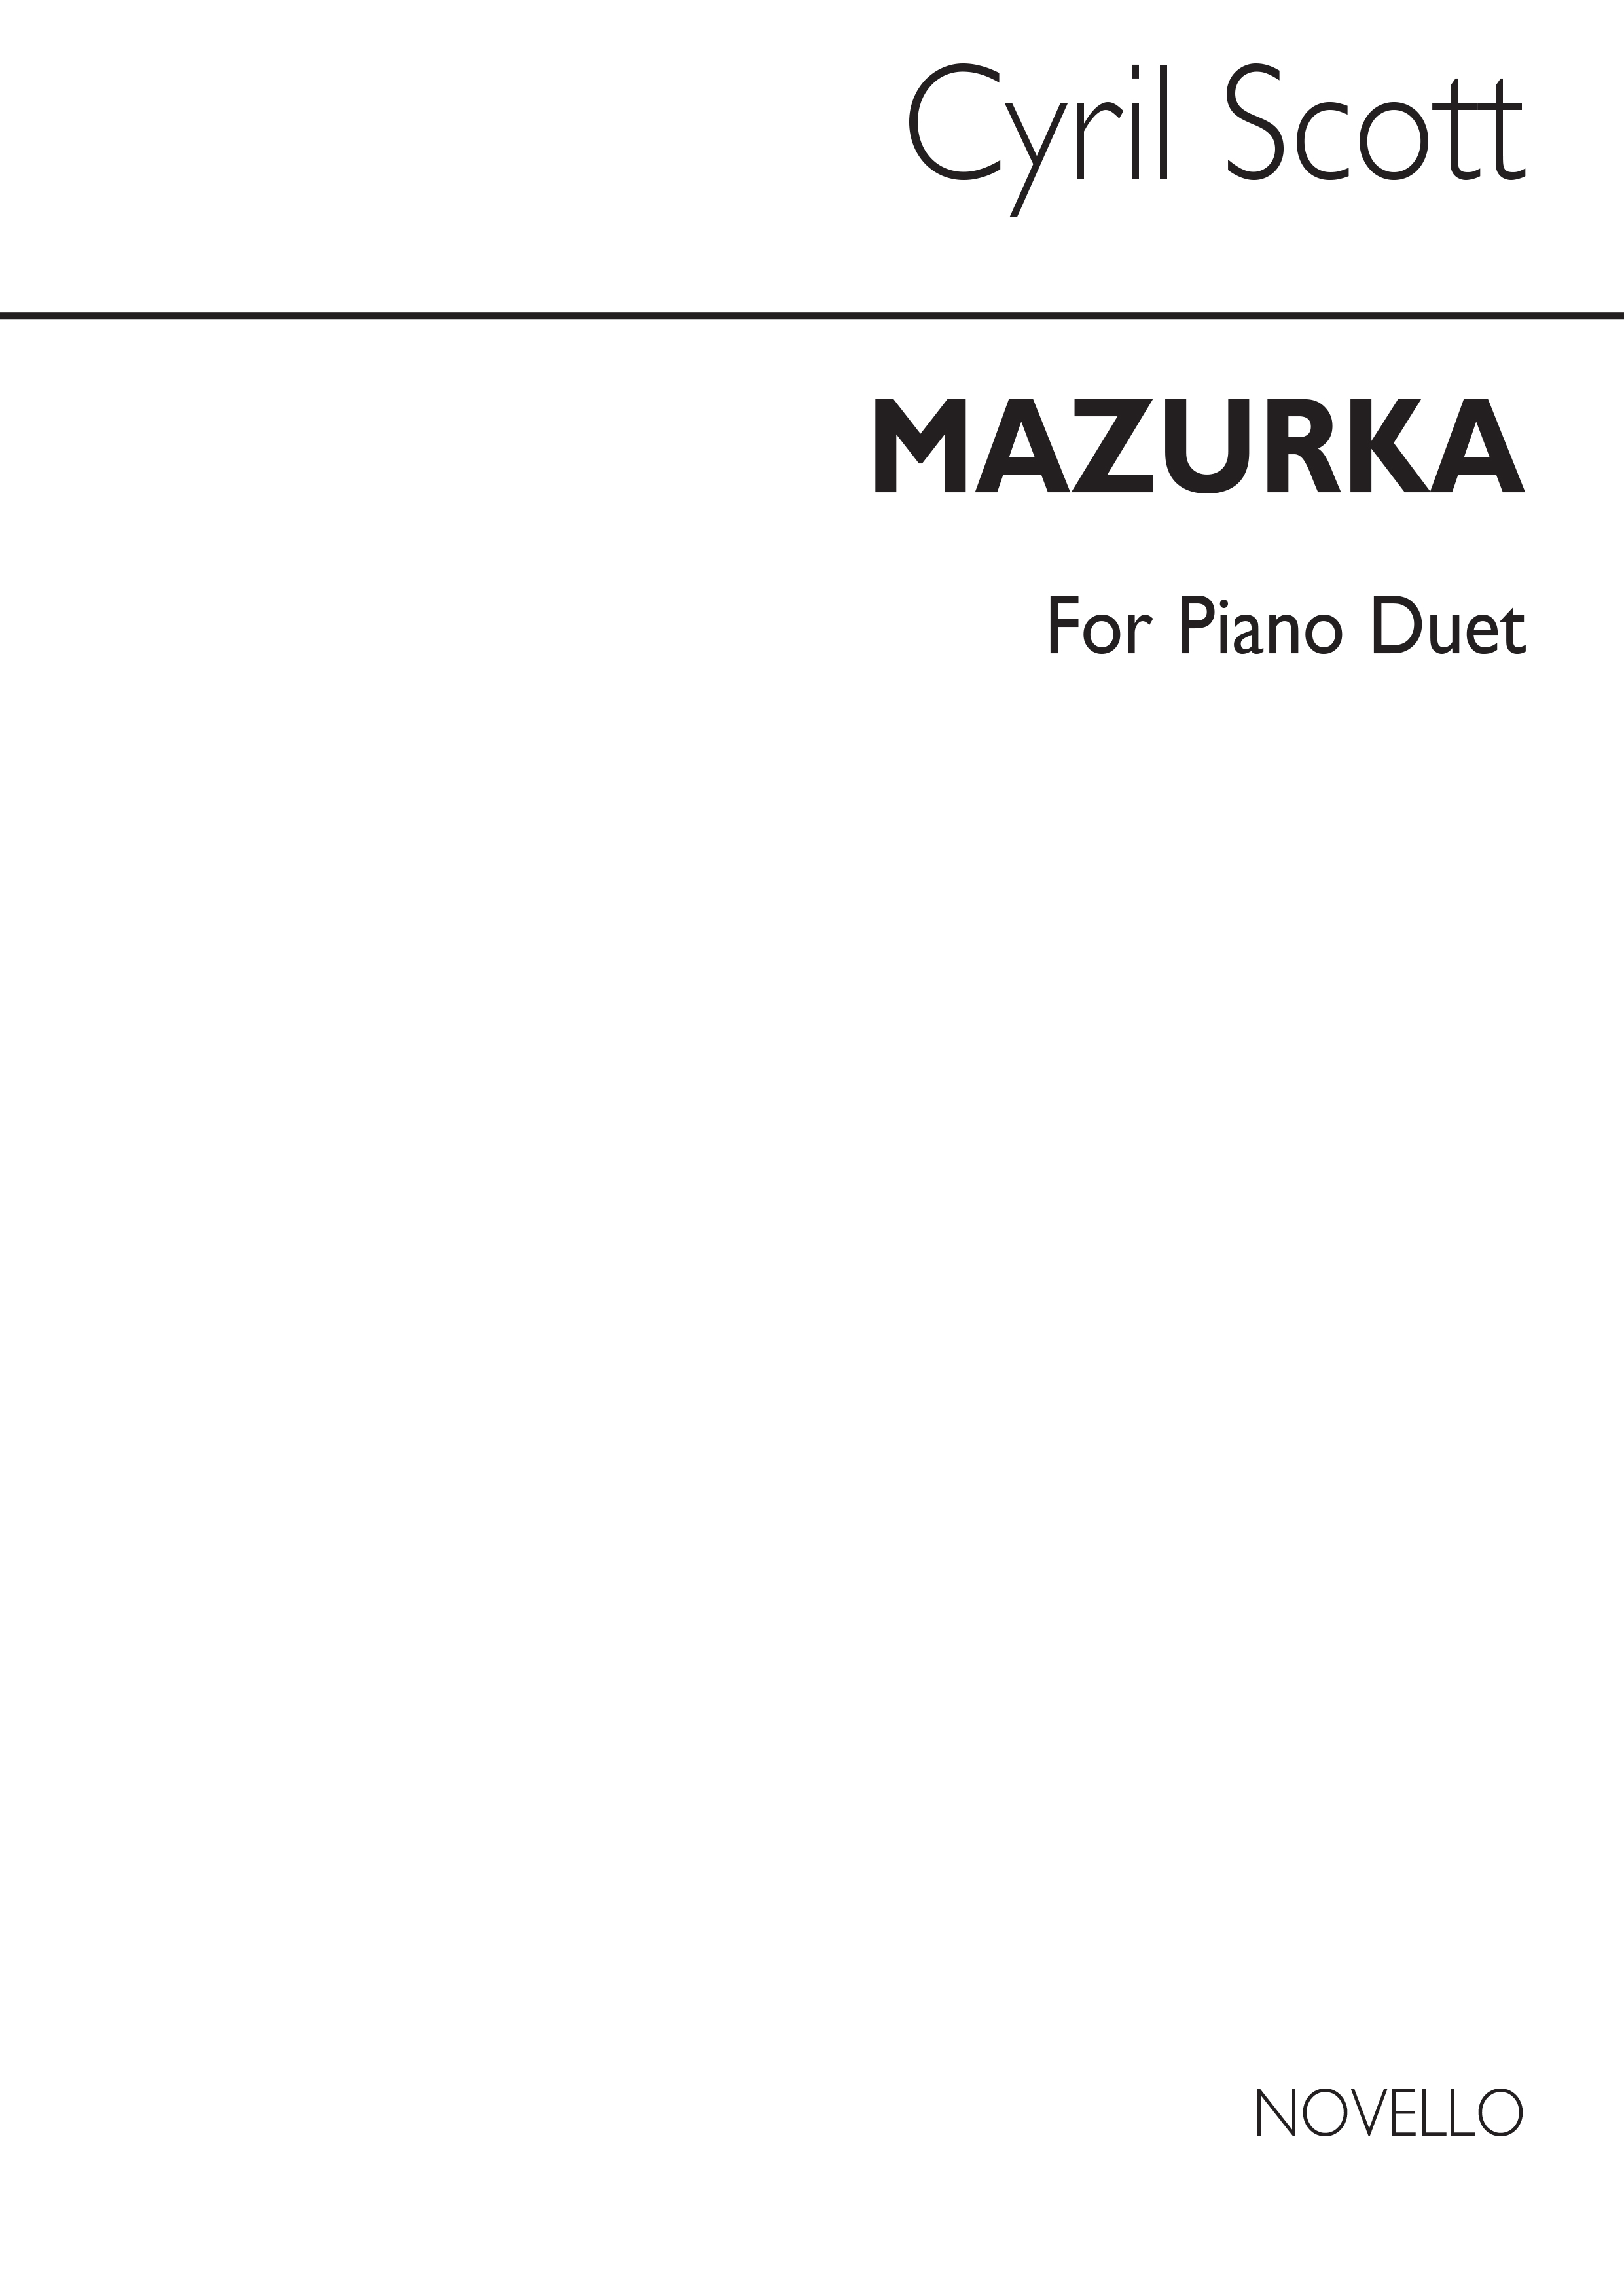 Cyril Scott: Mazurka Op67 No.1 Piano Duet